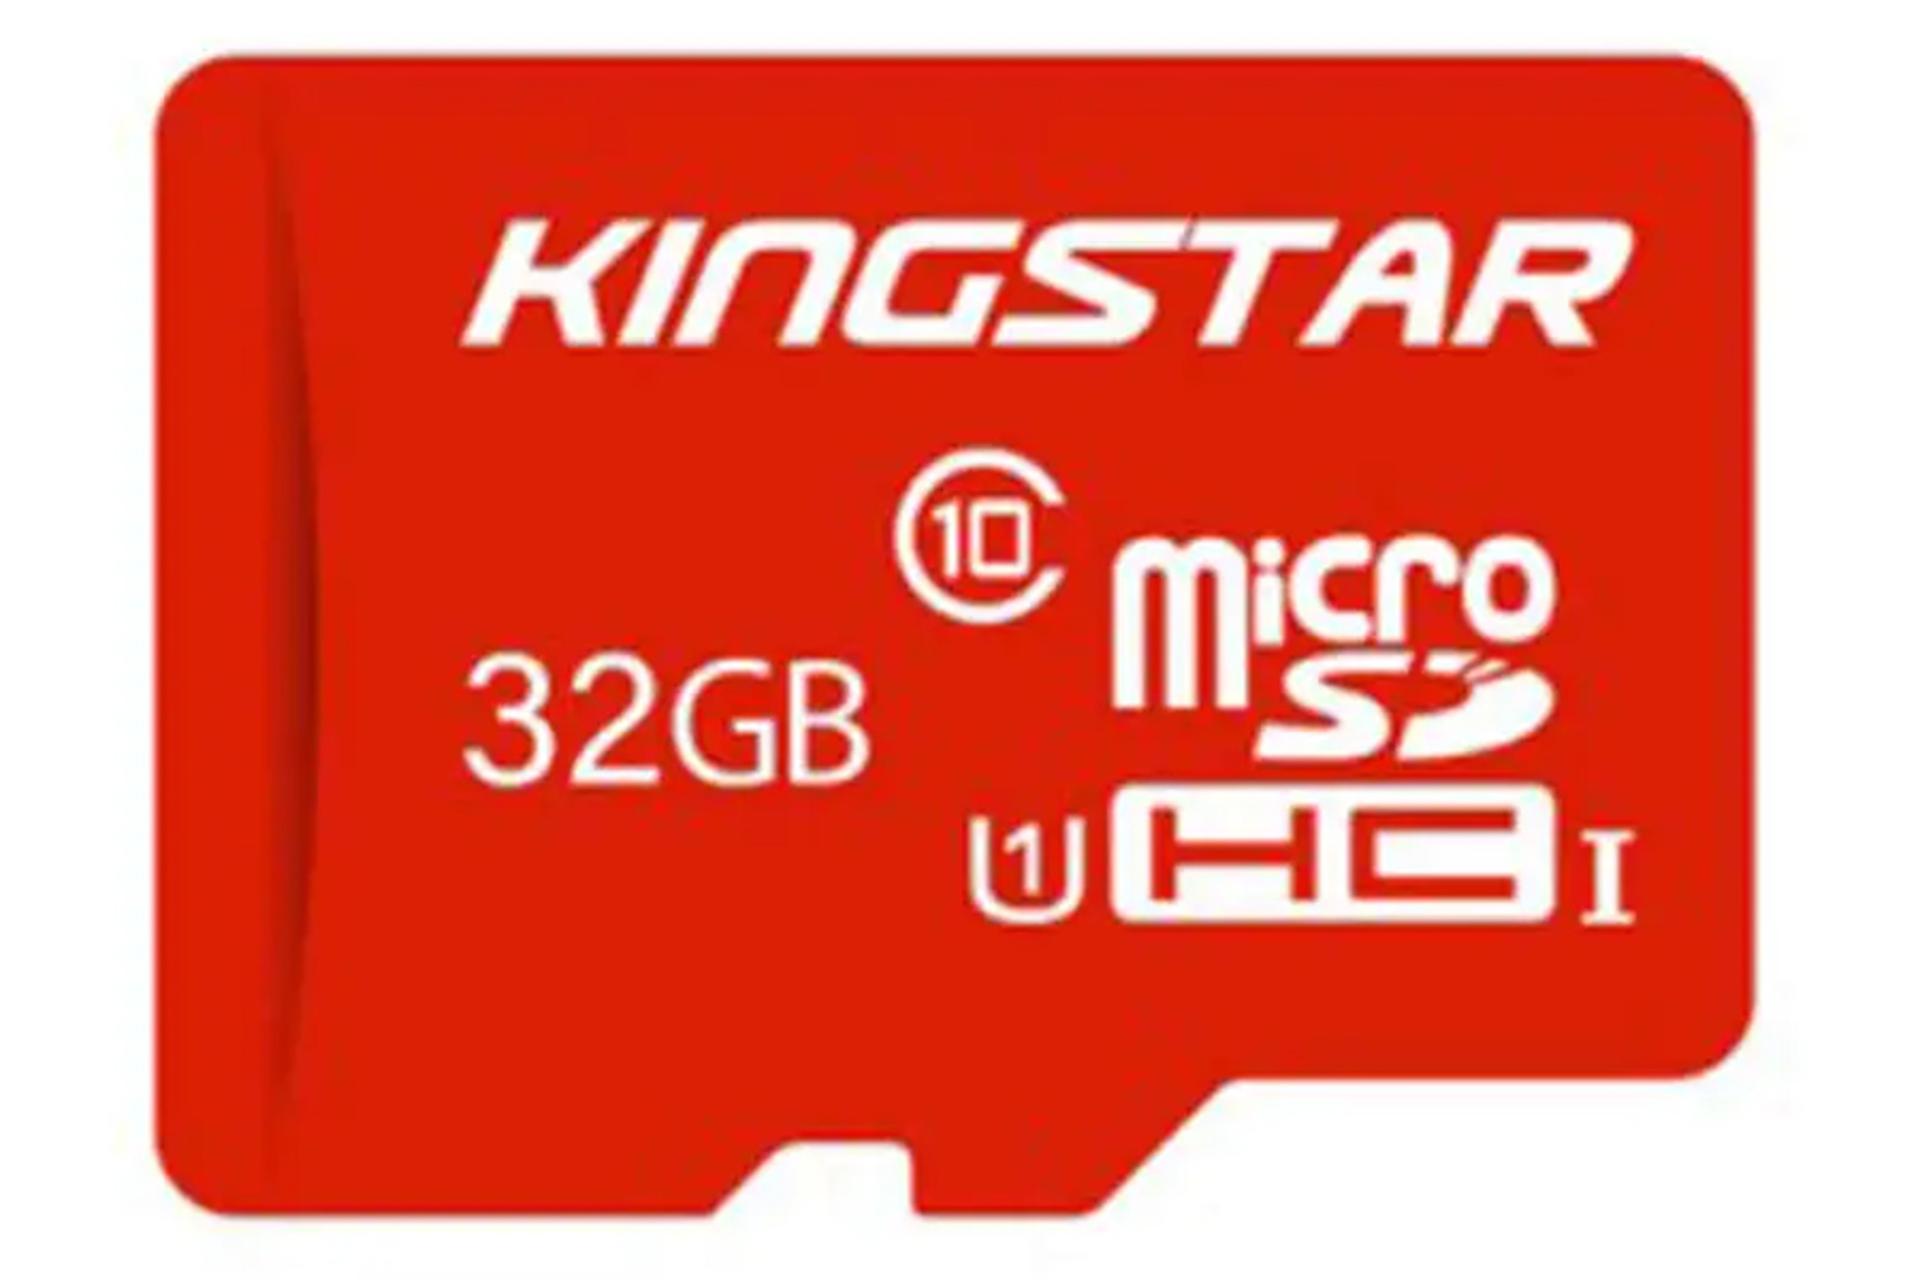 مرجع متخصصين ايران كارت حافظه كينگ استار microSDHC با ظرفيت 32 گيگابايت كلاس 10 قرمز